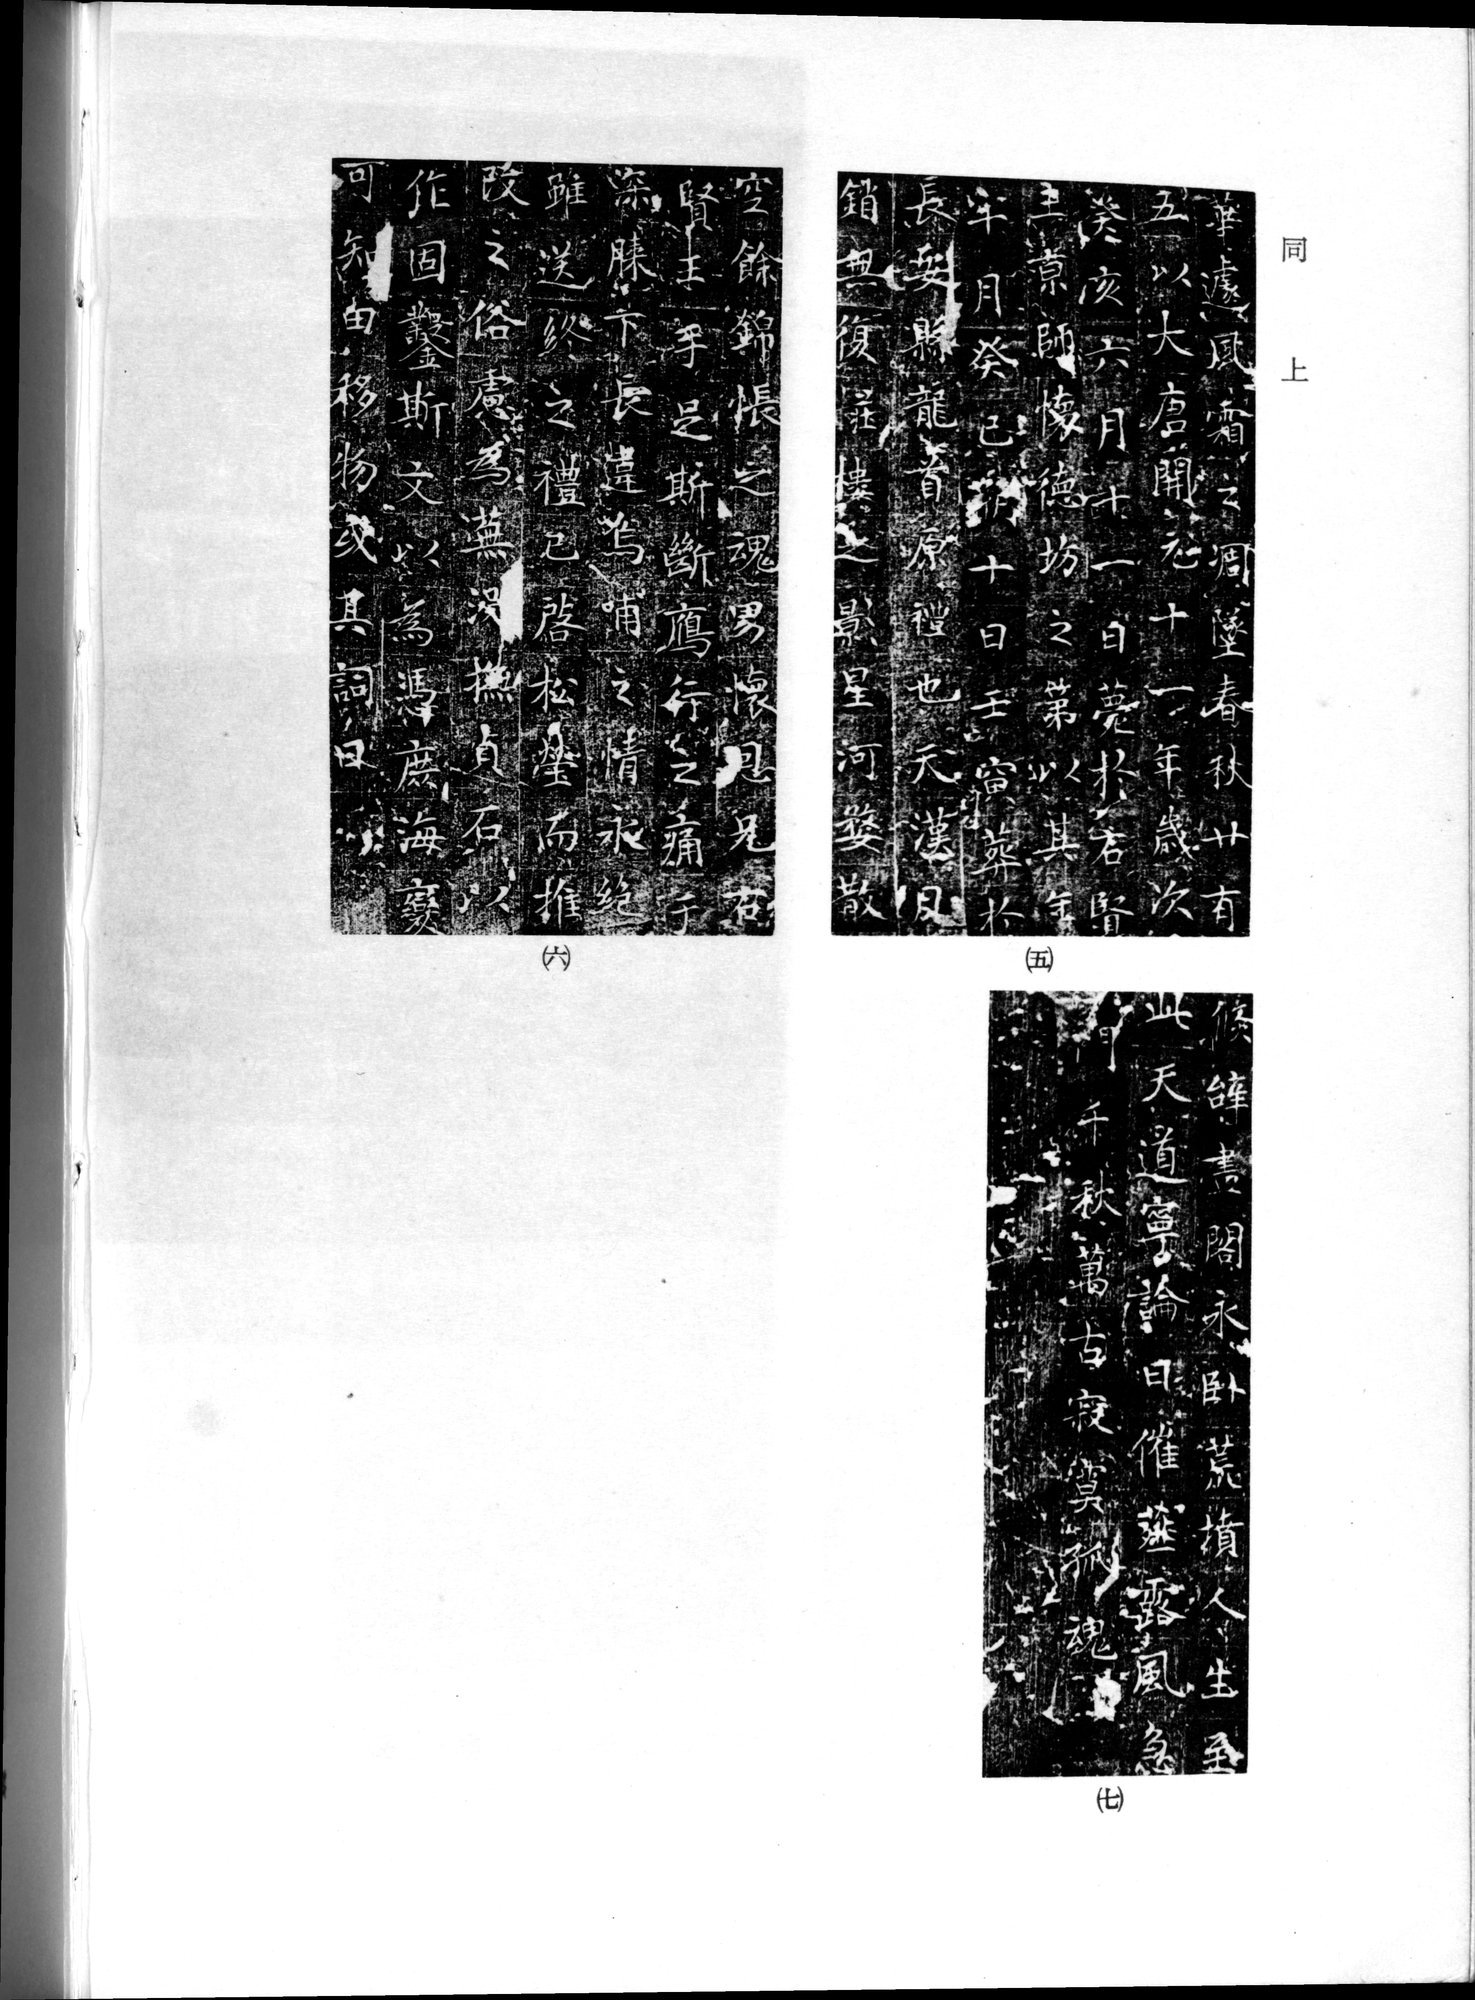 羽田博士史学論文集 : vol.2 / Page 26 (Grayscale High Resolution Image)